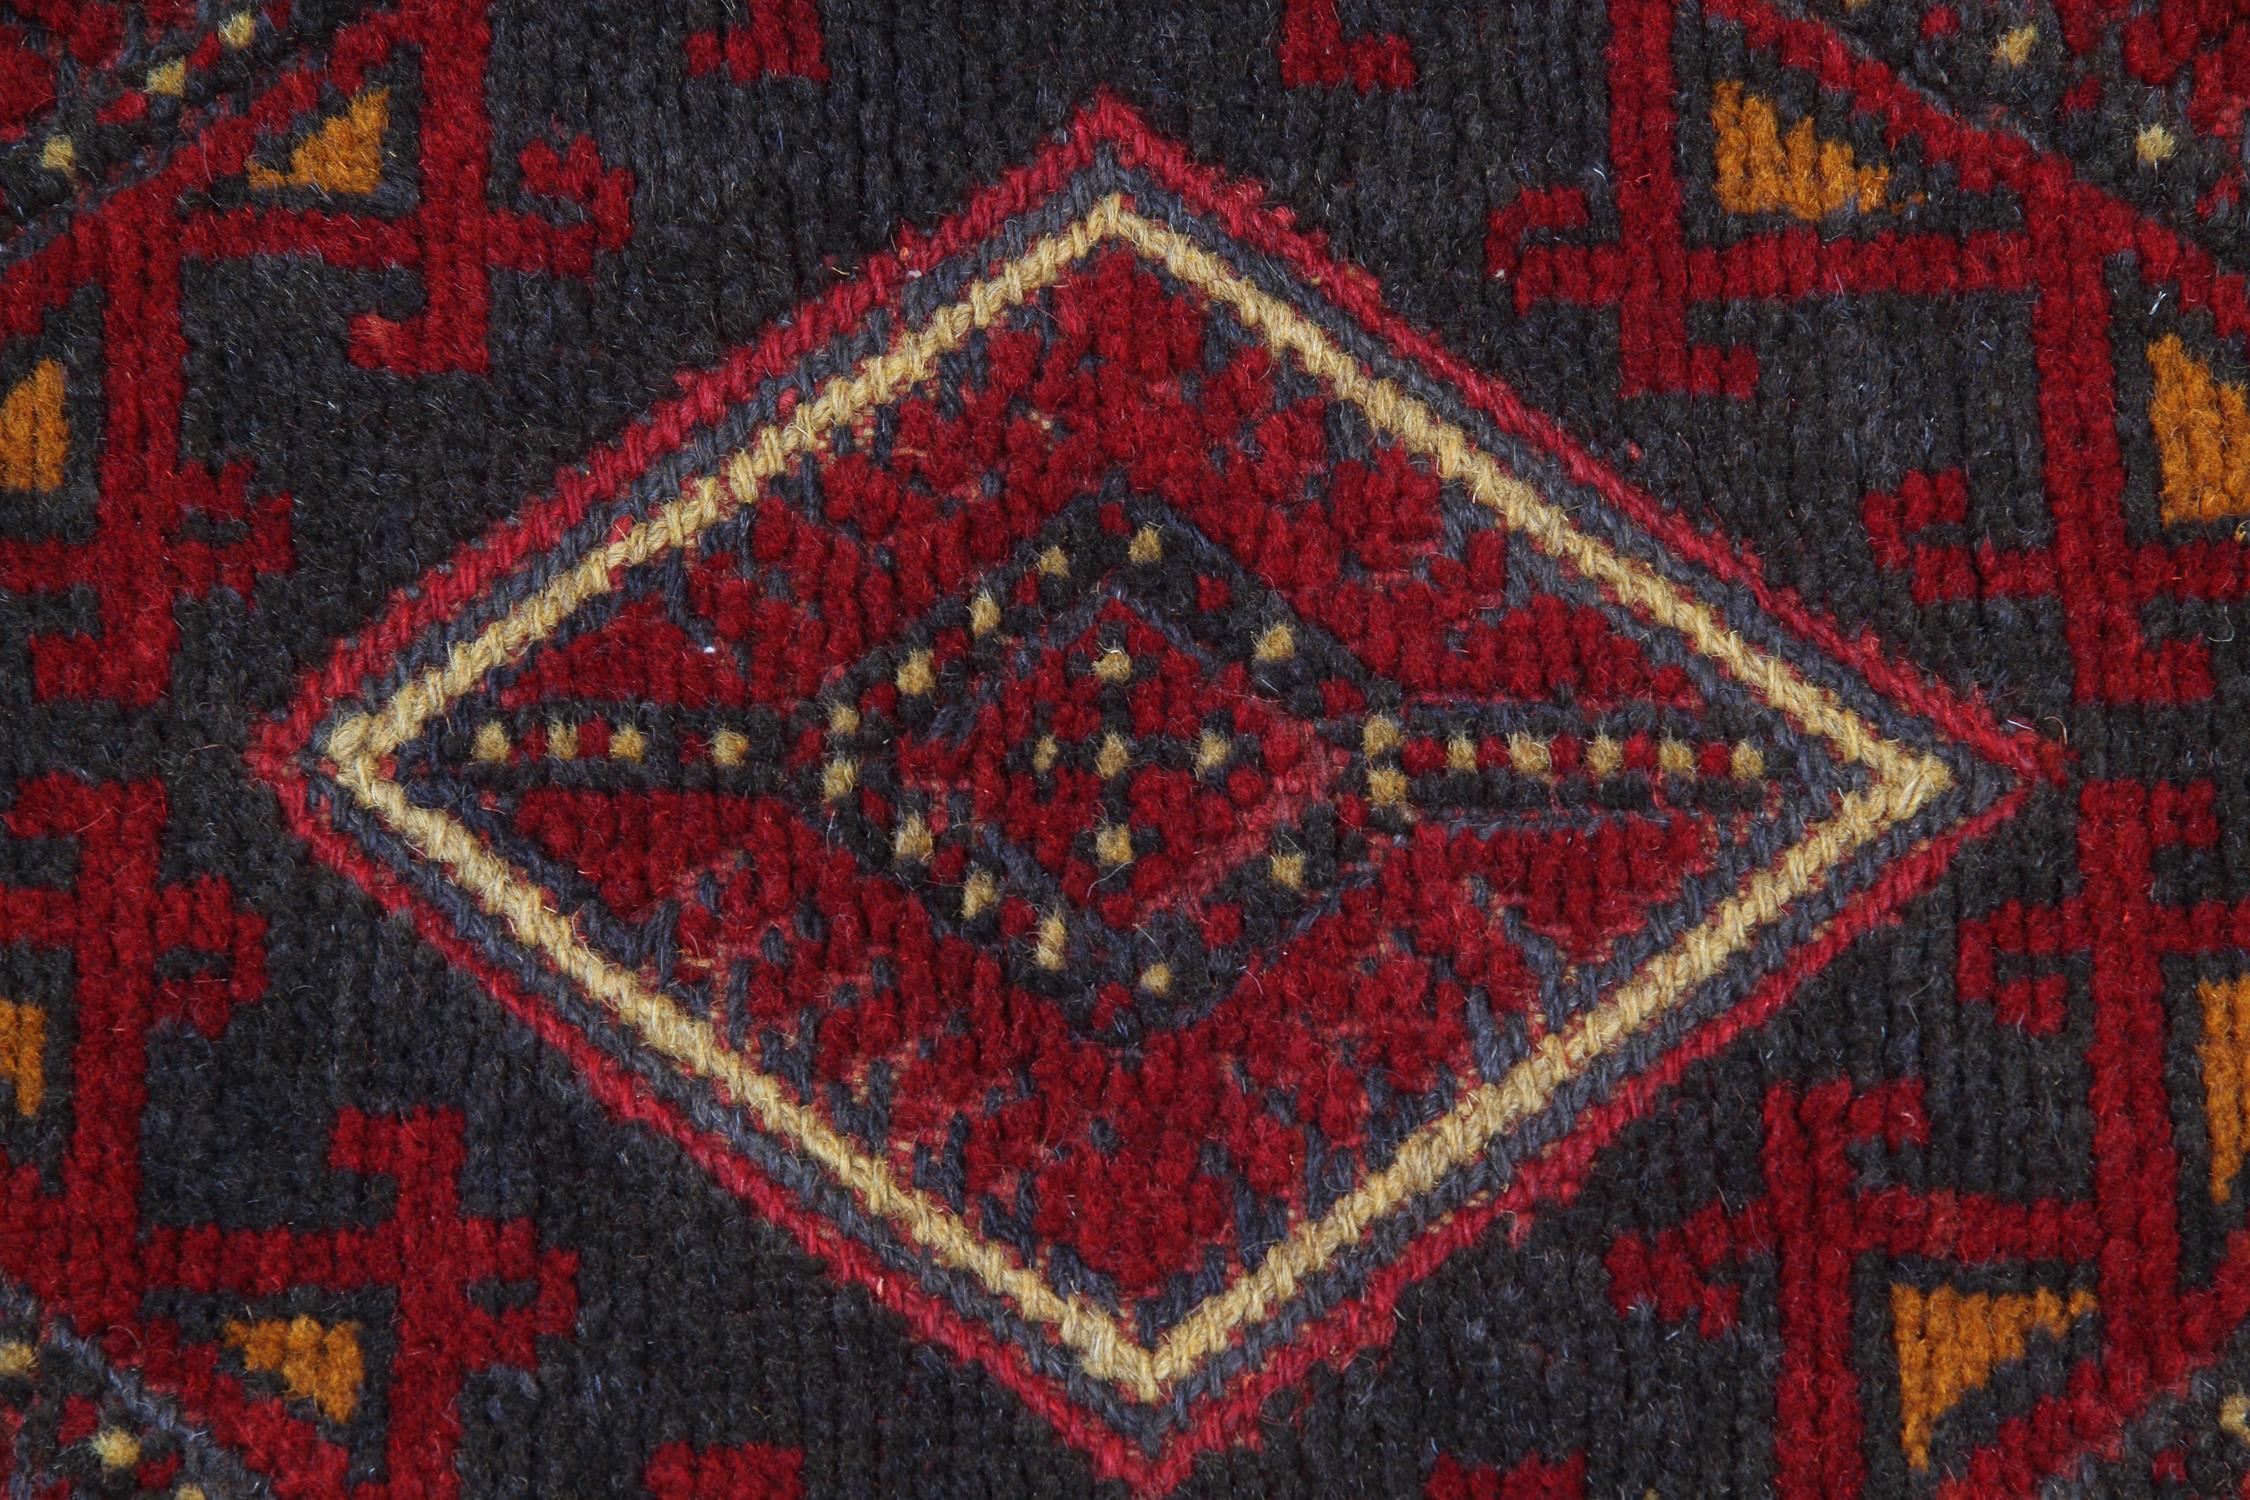 Dieser handgefertigte Teppich beeindruckende antike rote Teppich wird von unseren Meisterwebern in Kaukasien hergestellt. Diese besonderen Teppichläufer werden mit natürlichen pflanzlichen Farbstoffen hergestellt. Die gemusterten Teppiche zeigen ein